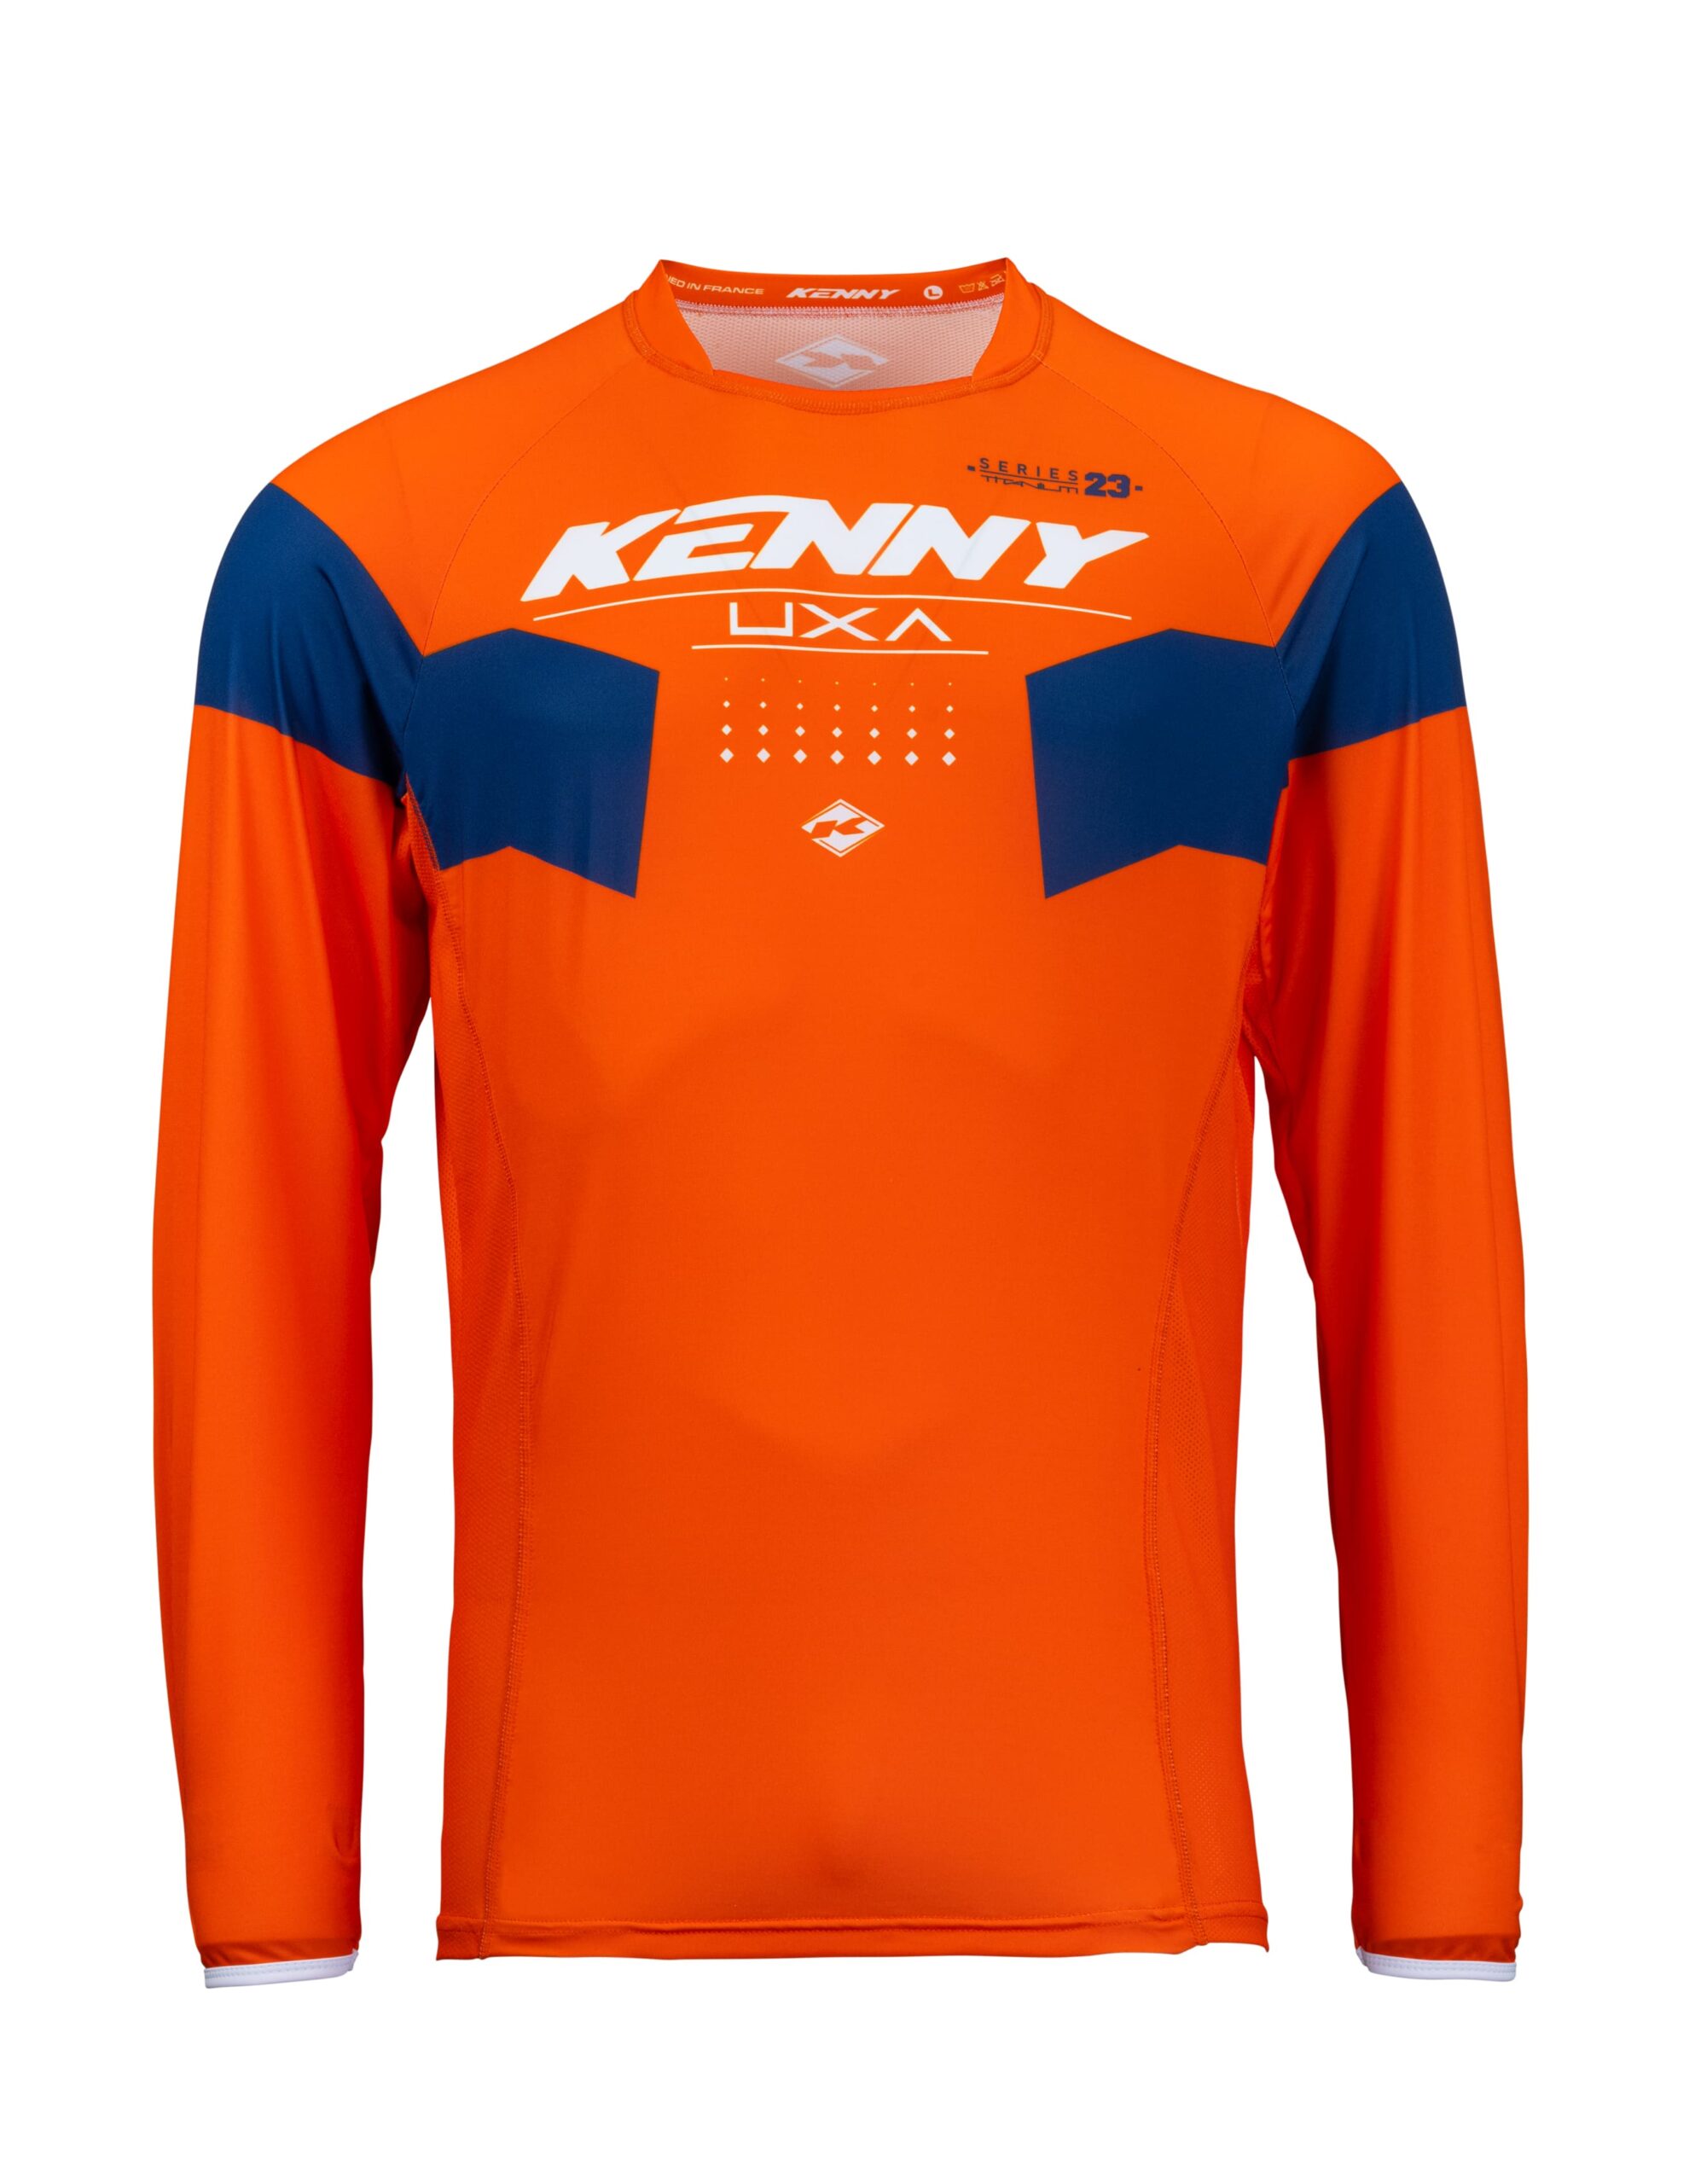 maillot_motocross_kenny_titanium_solid_orange